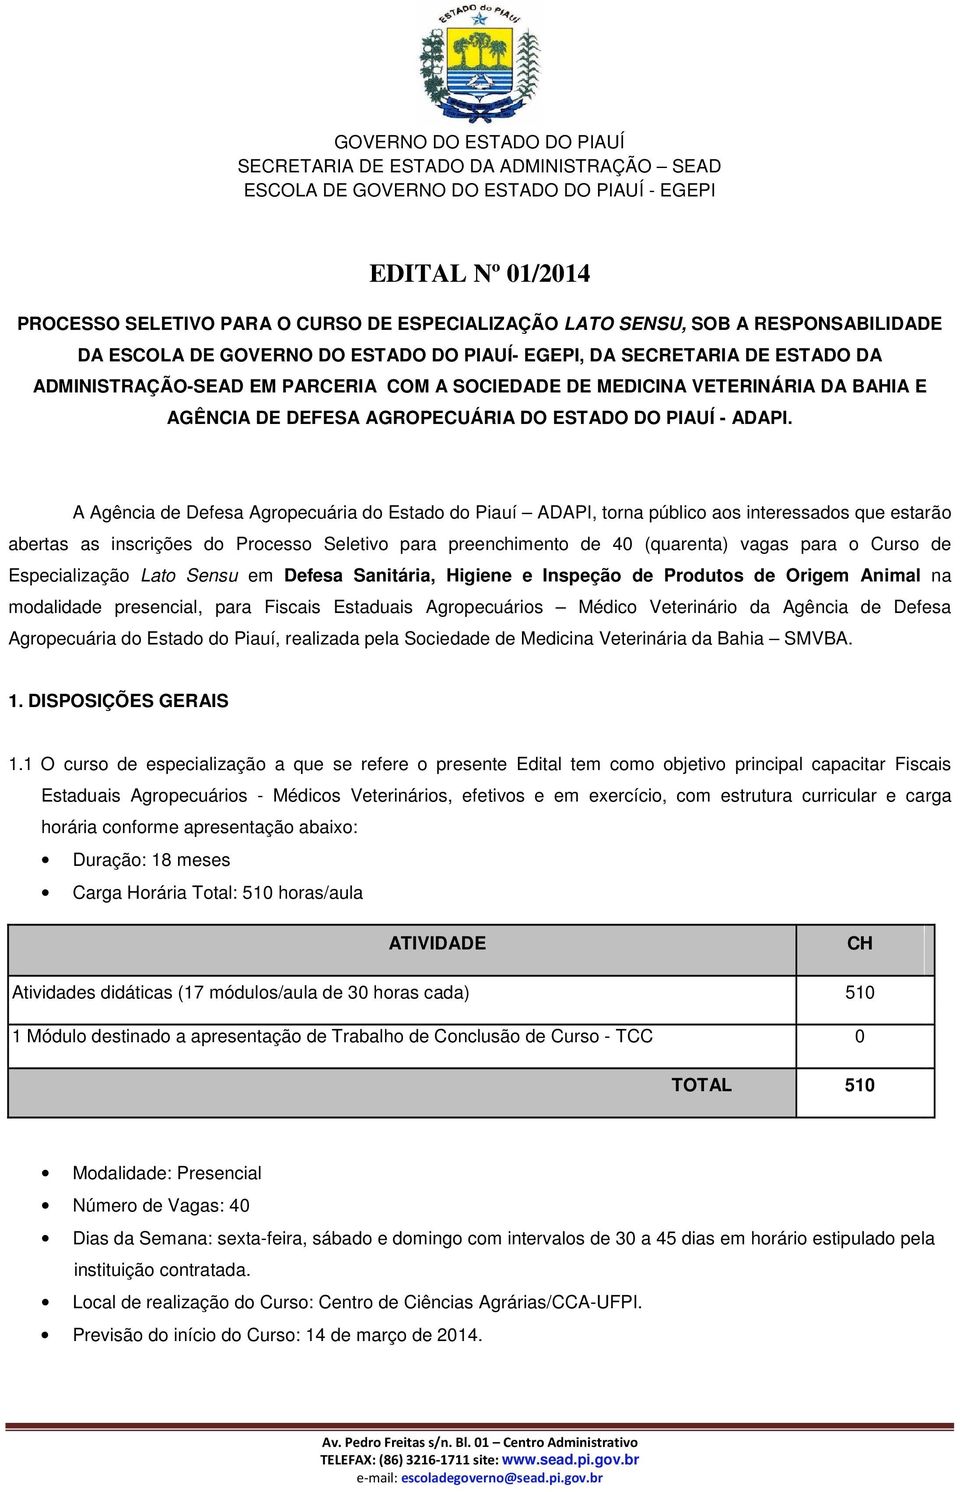 A Agência de Defesa Agropecuária do Estado do Piauí ADAPI, torna público aos interessados que estarão abertas as inscrições do Processo Seletivo para preenchimento de 40 (quarenta) vagas para o Curso